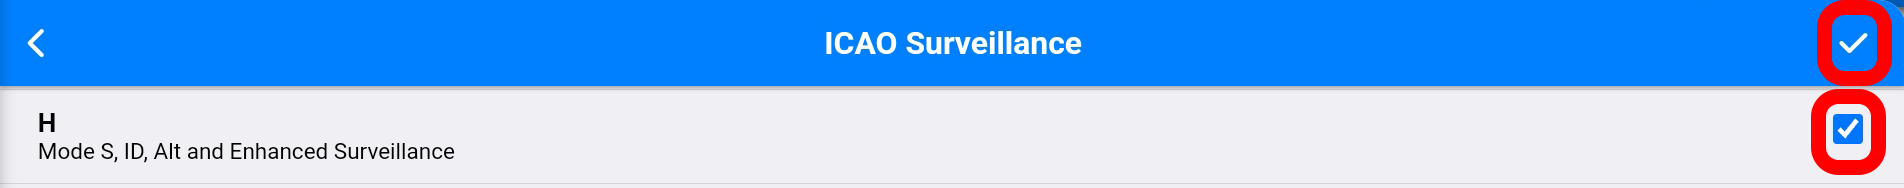 icao surveillance